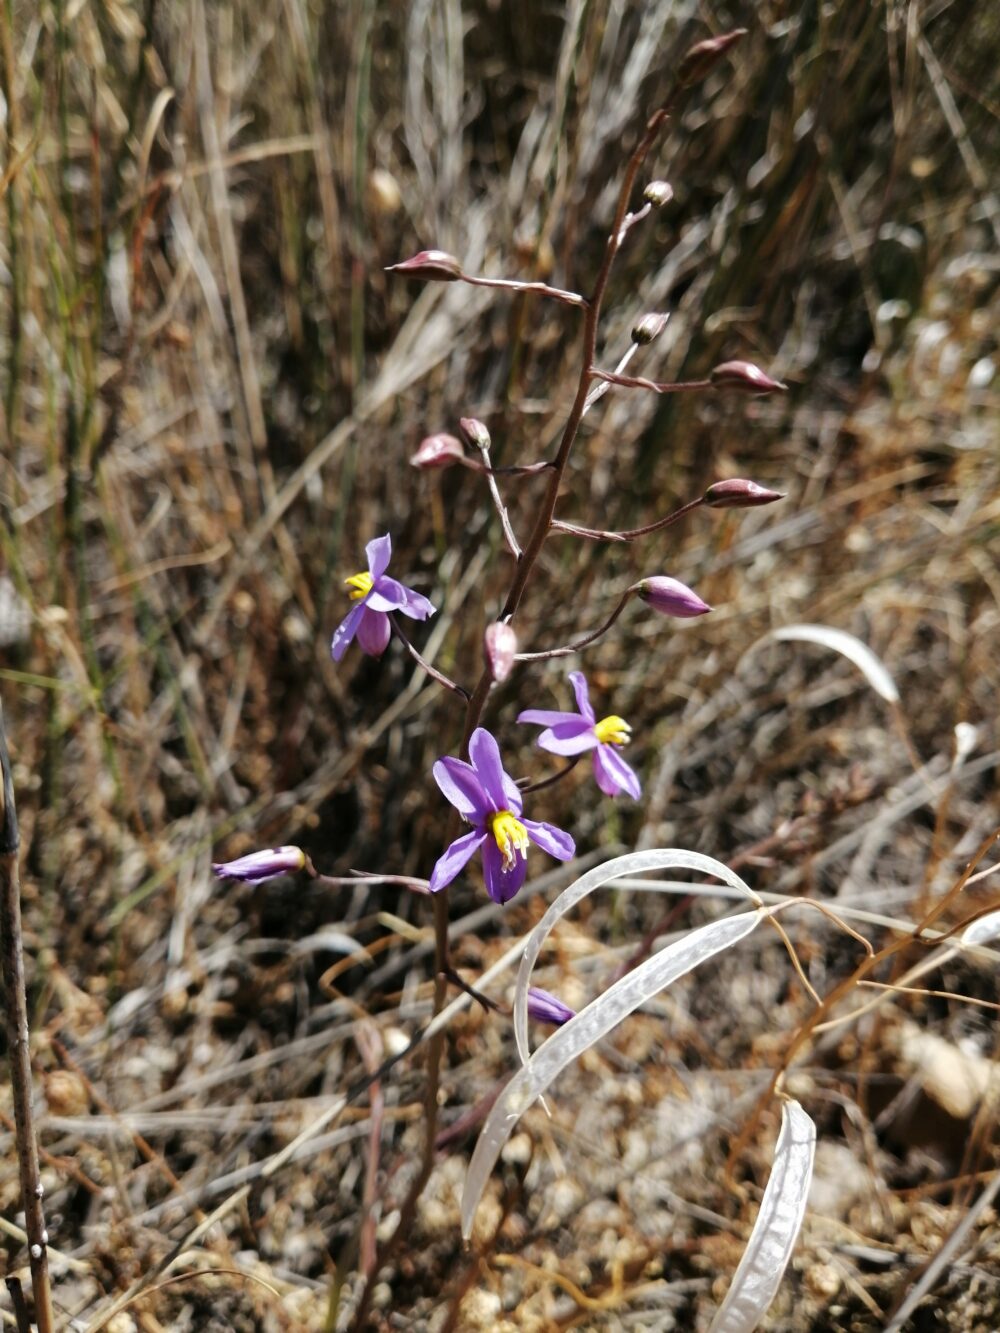 Cyanella hyacinthoides